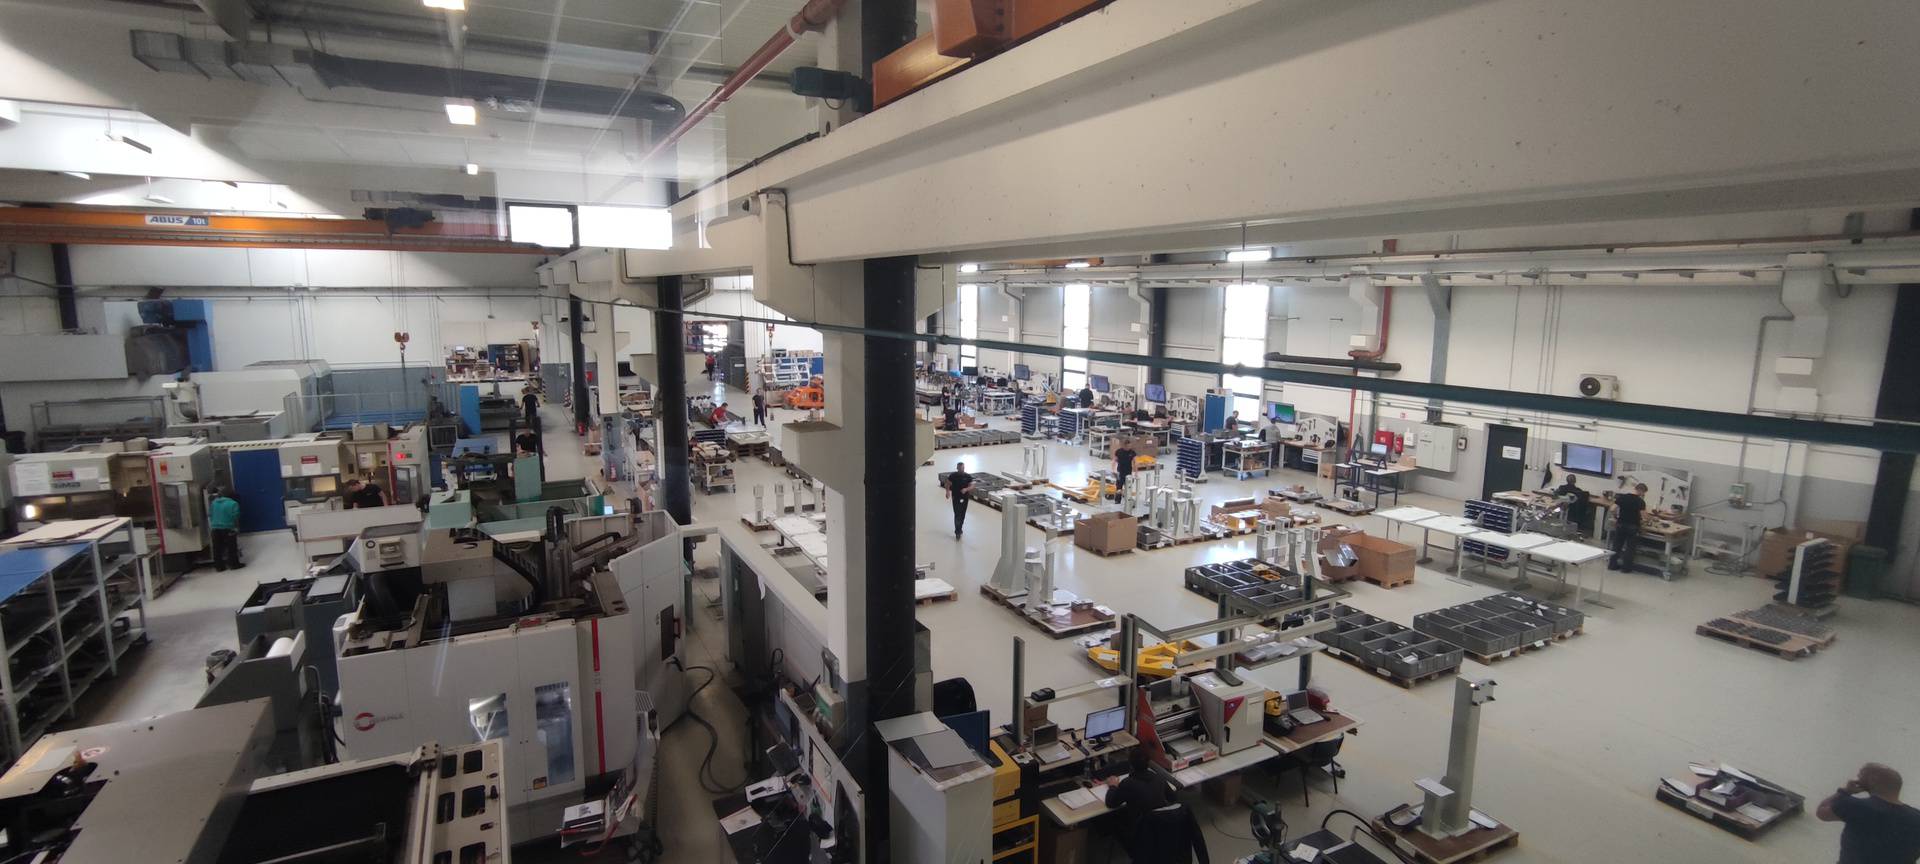 Tvrtka Multinorm iz Cerne sagradila novu proizvodnu halu uz pomoć EU fondova